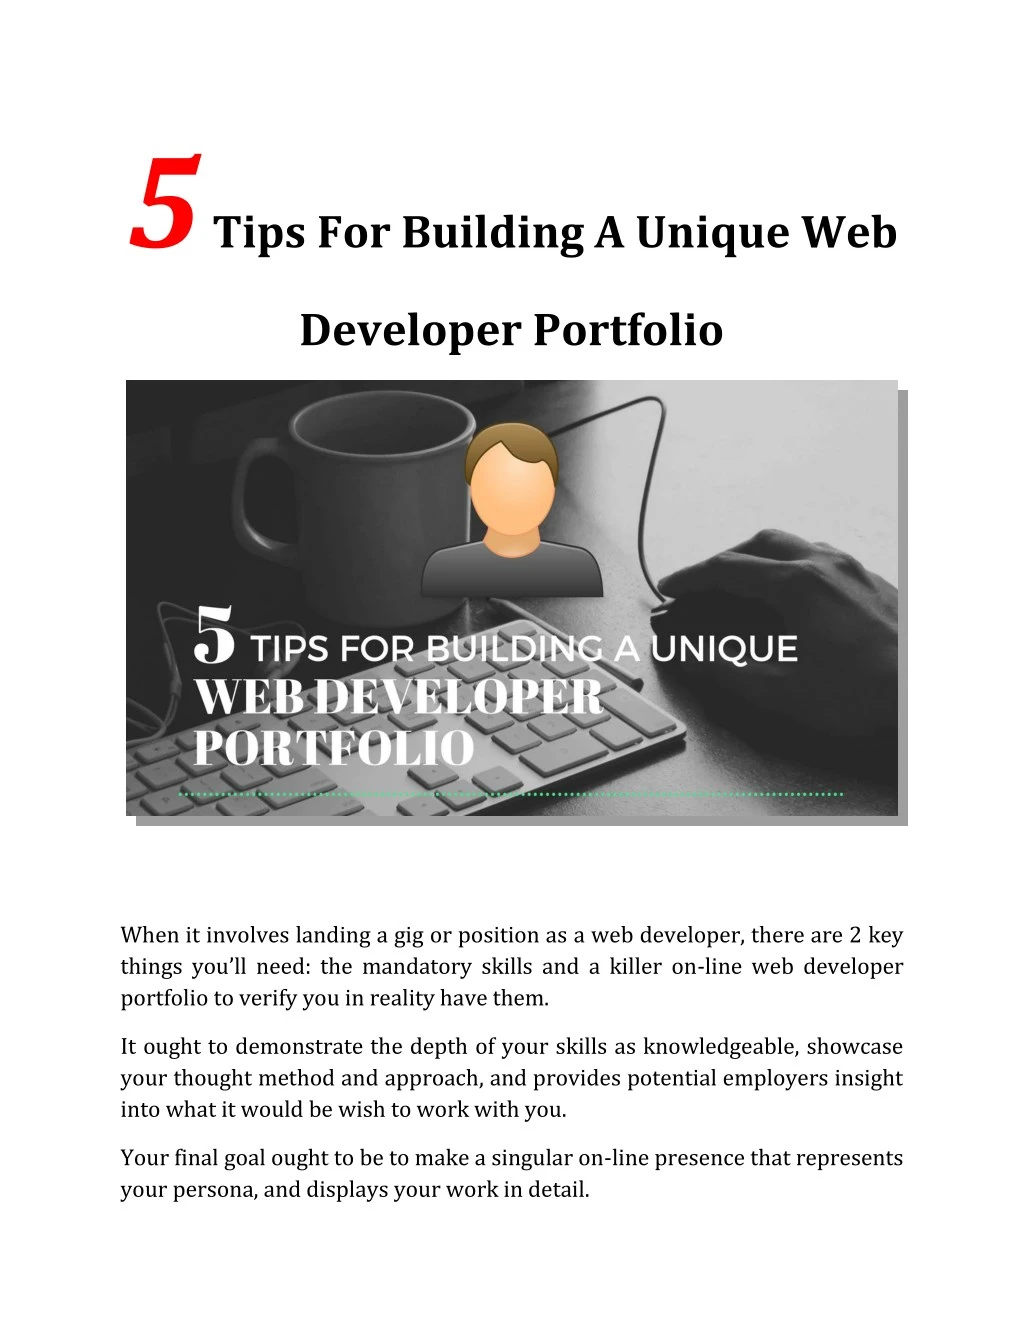 5 tips for building a unique web